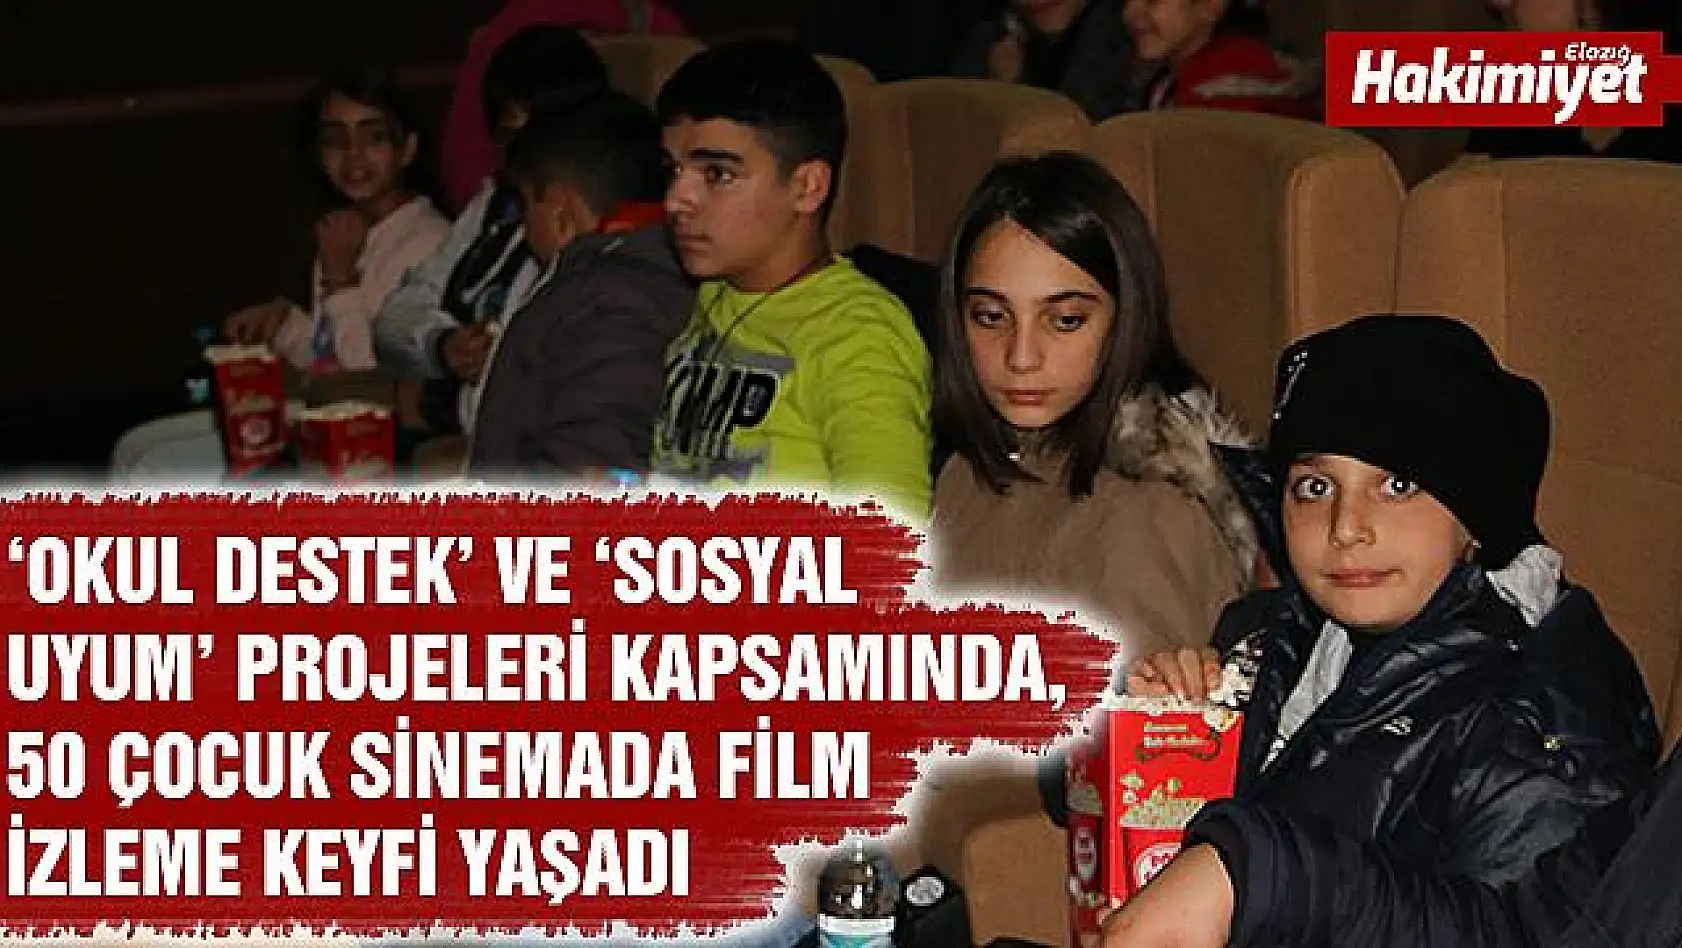 Elazığ'da çocuklar, sinema da film izleme keyfi yaşadı